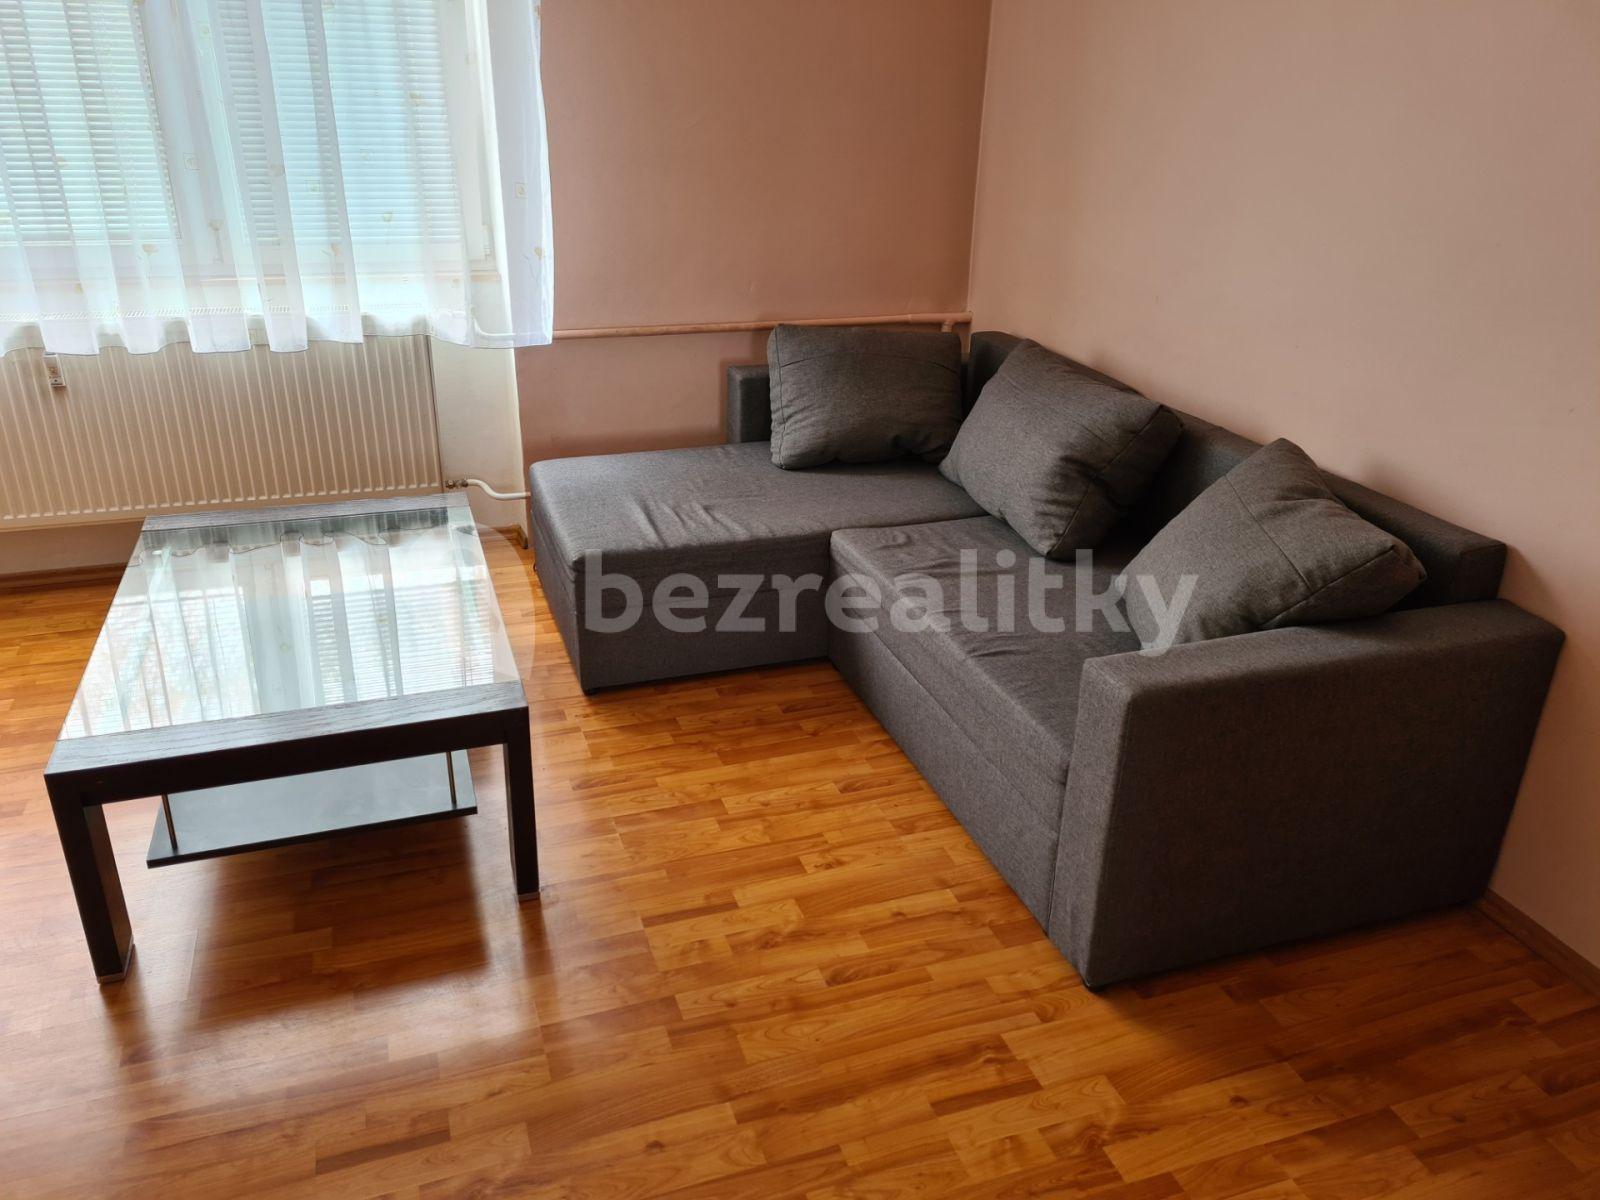 3 bedroom flat to rent, 62 m², Jungmannova, Český Brod, Středočeský Region